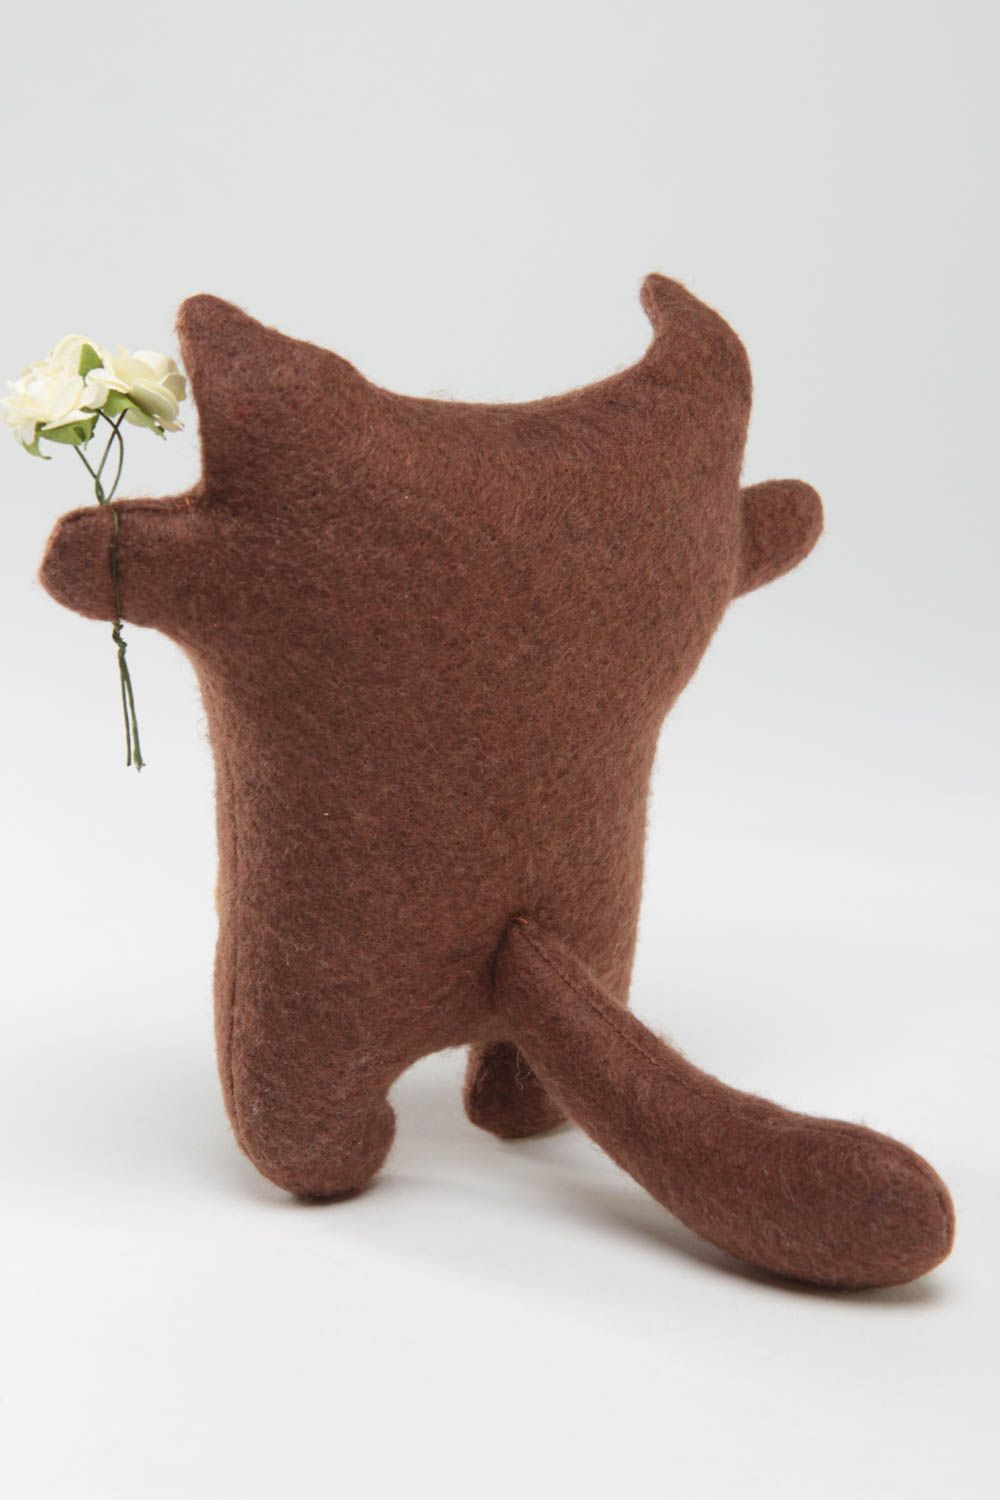 Мягкая маленькая игрушка из фетра в виде котика с цветами коричневая хенд мейд фото 4